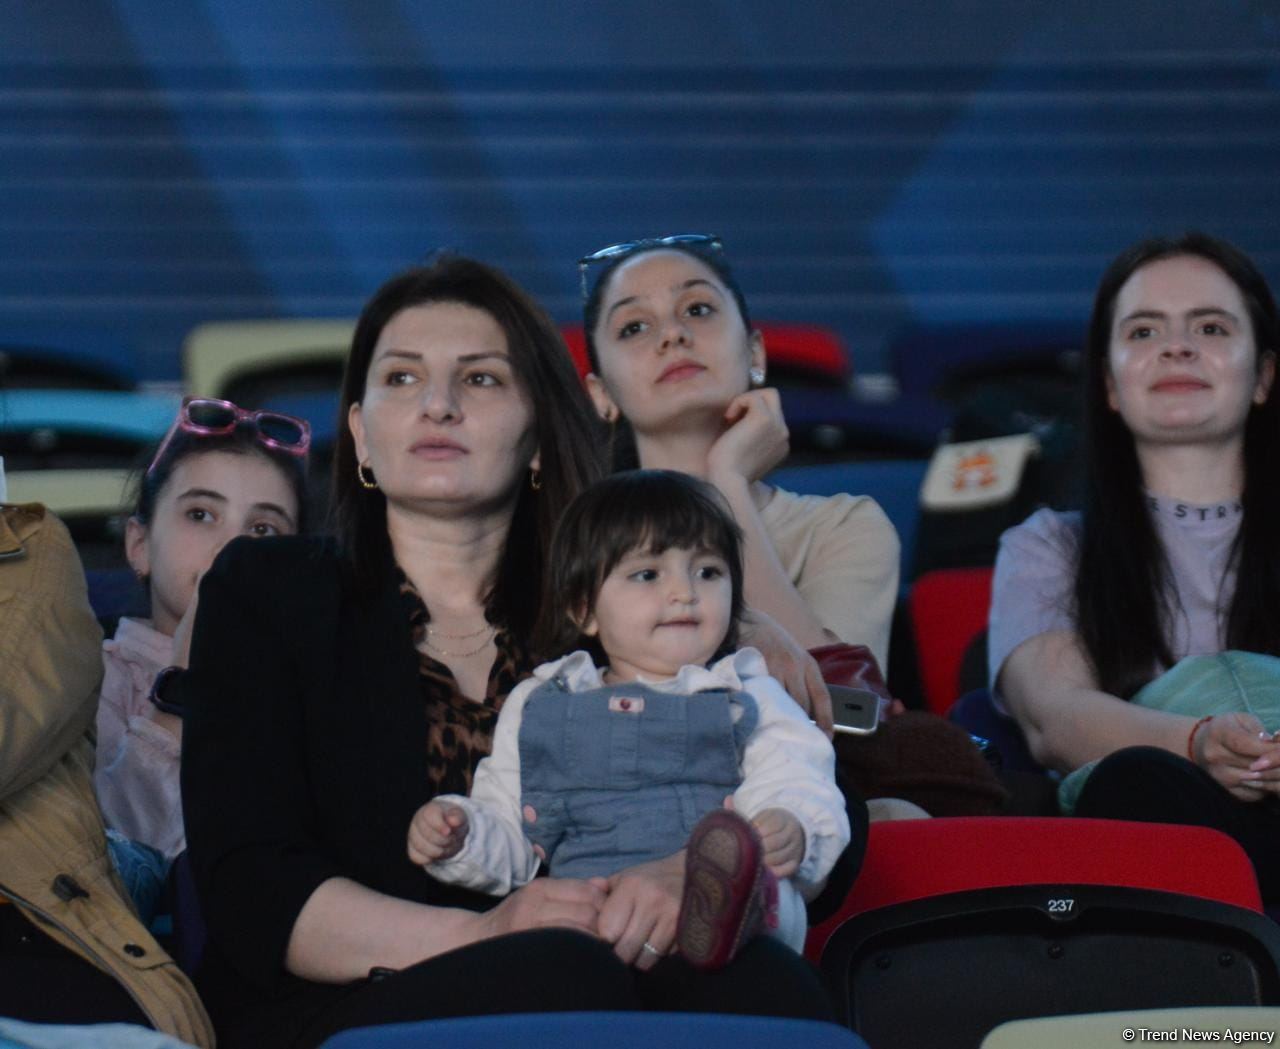 Яркость и красота – зрители в восторге от выступления участниц Кубка мира по художественной гимнастике в Баку (ФОТО)